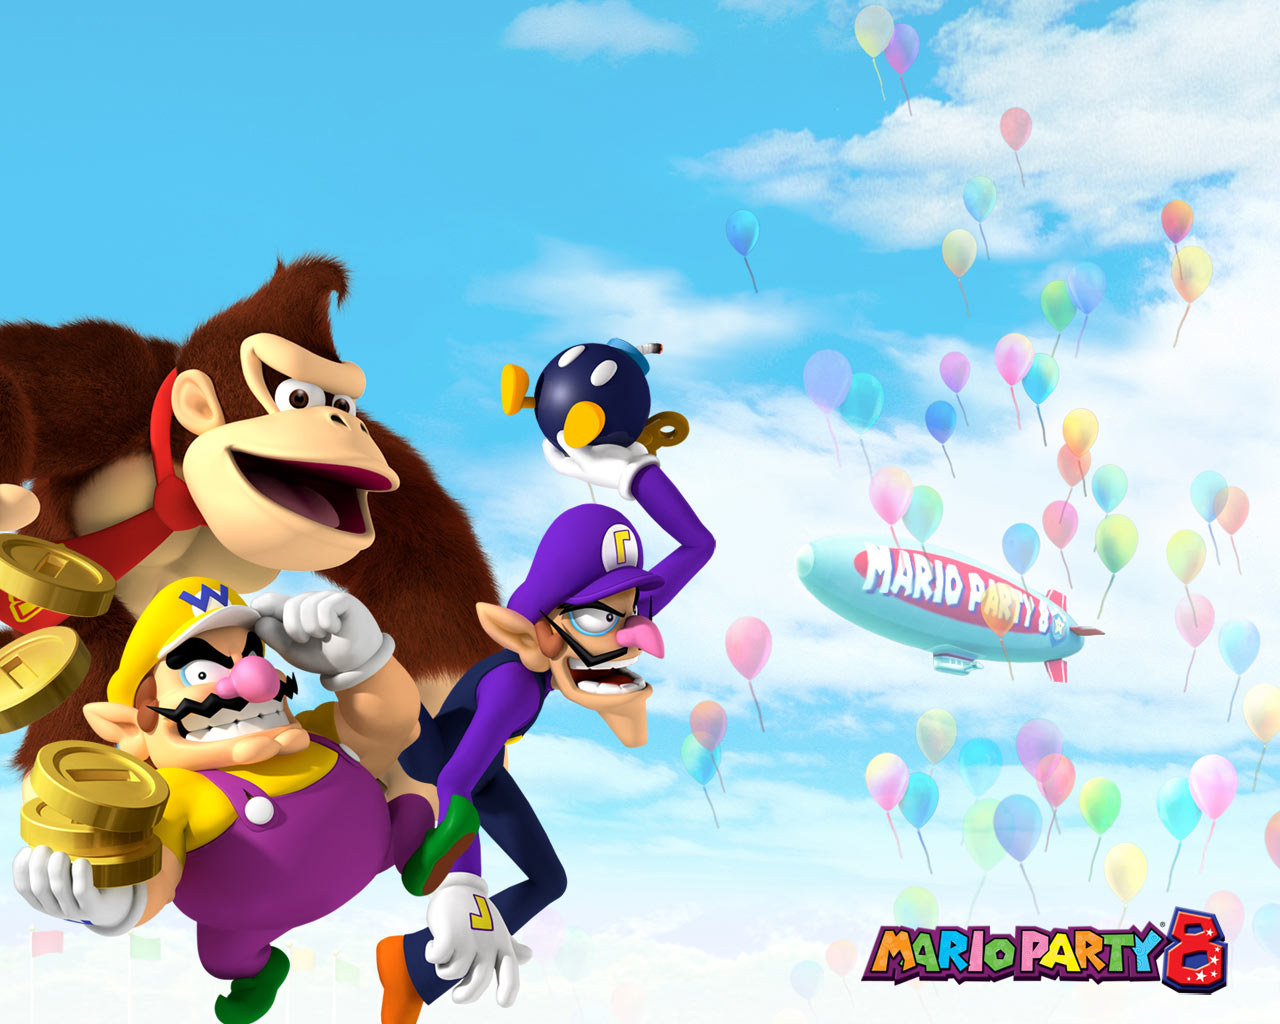 Desktop Wallpaper · Gallery · Games · Mario Party 8 | Free ...